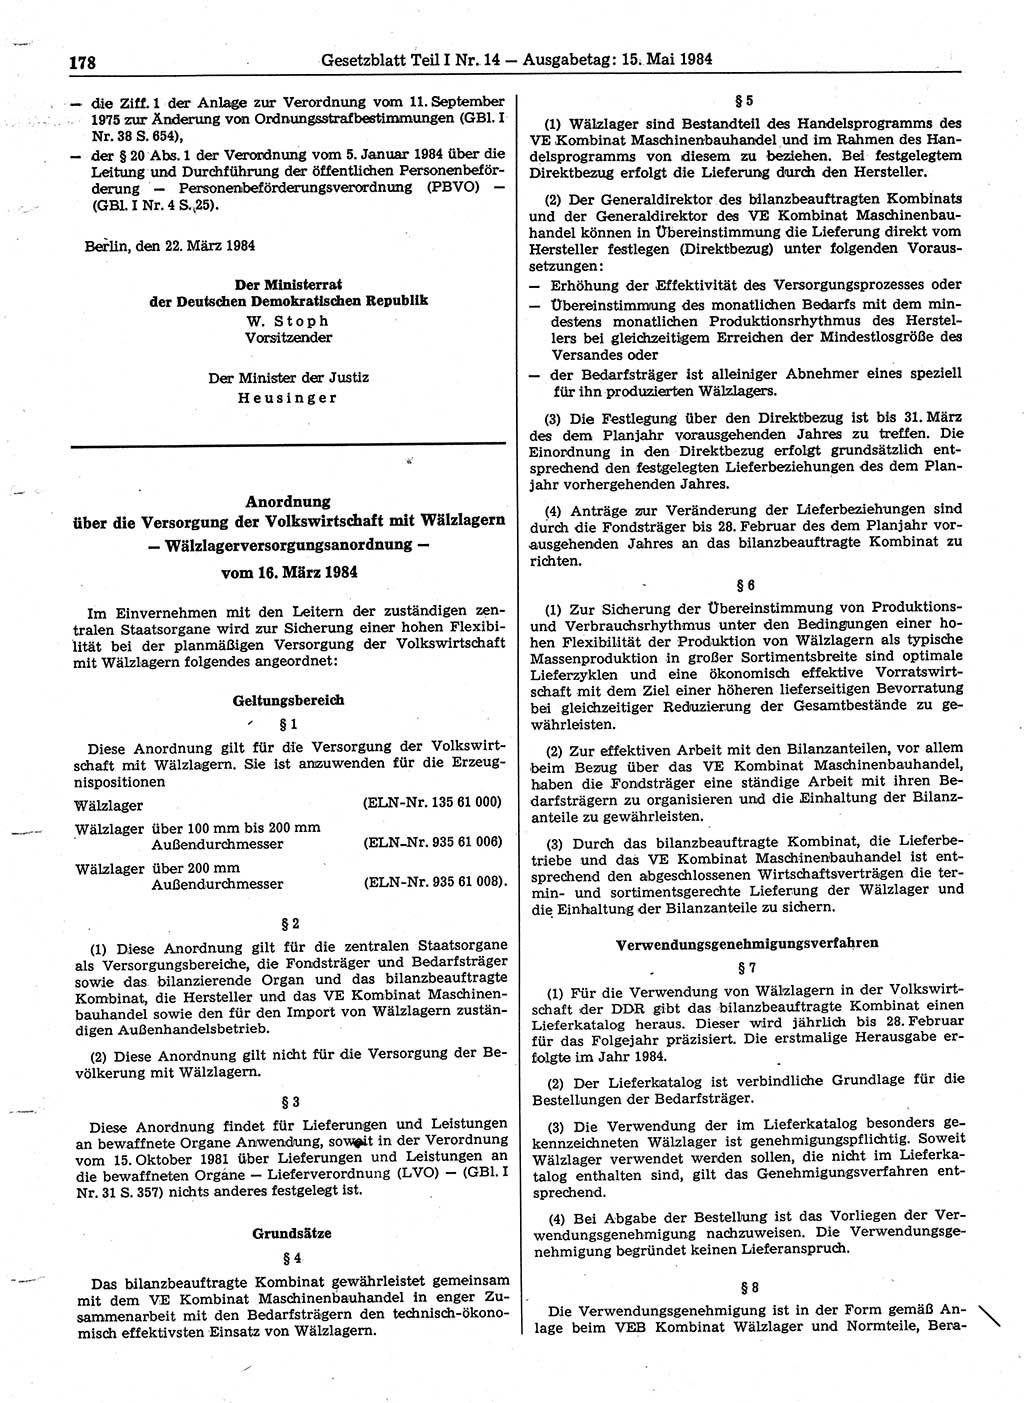 Gesetzblatt (GBl.) der Deutschen Demokratischen Republik (DDR) Teil Ⅰ 1984, Seite 178 (GBl. DDR Ⅰ 1984, S. 178)